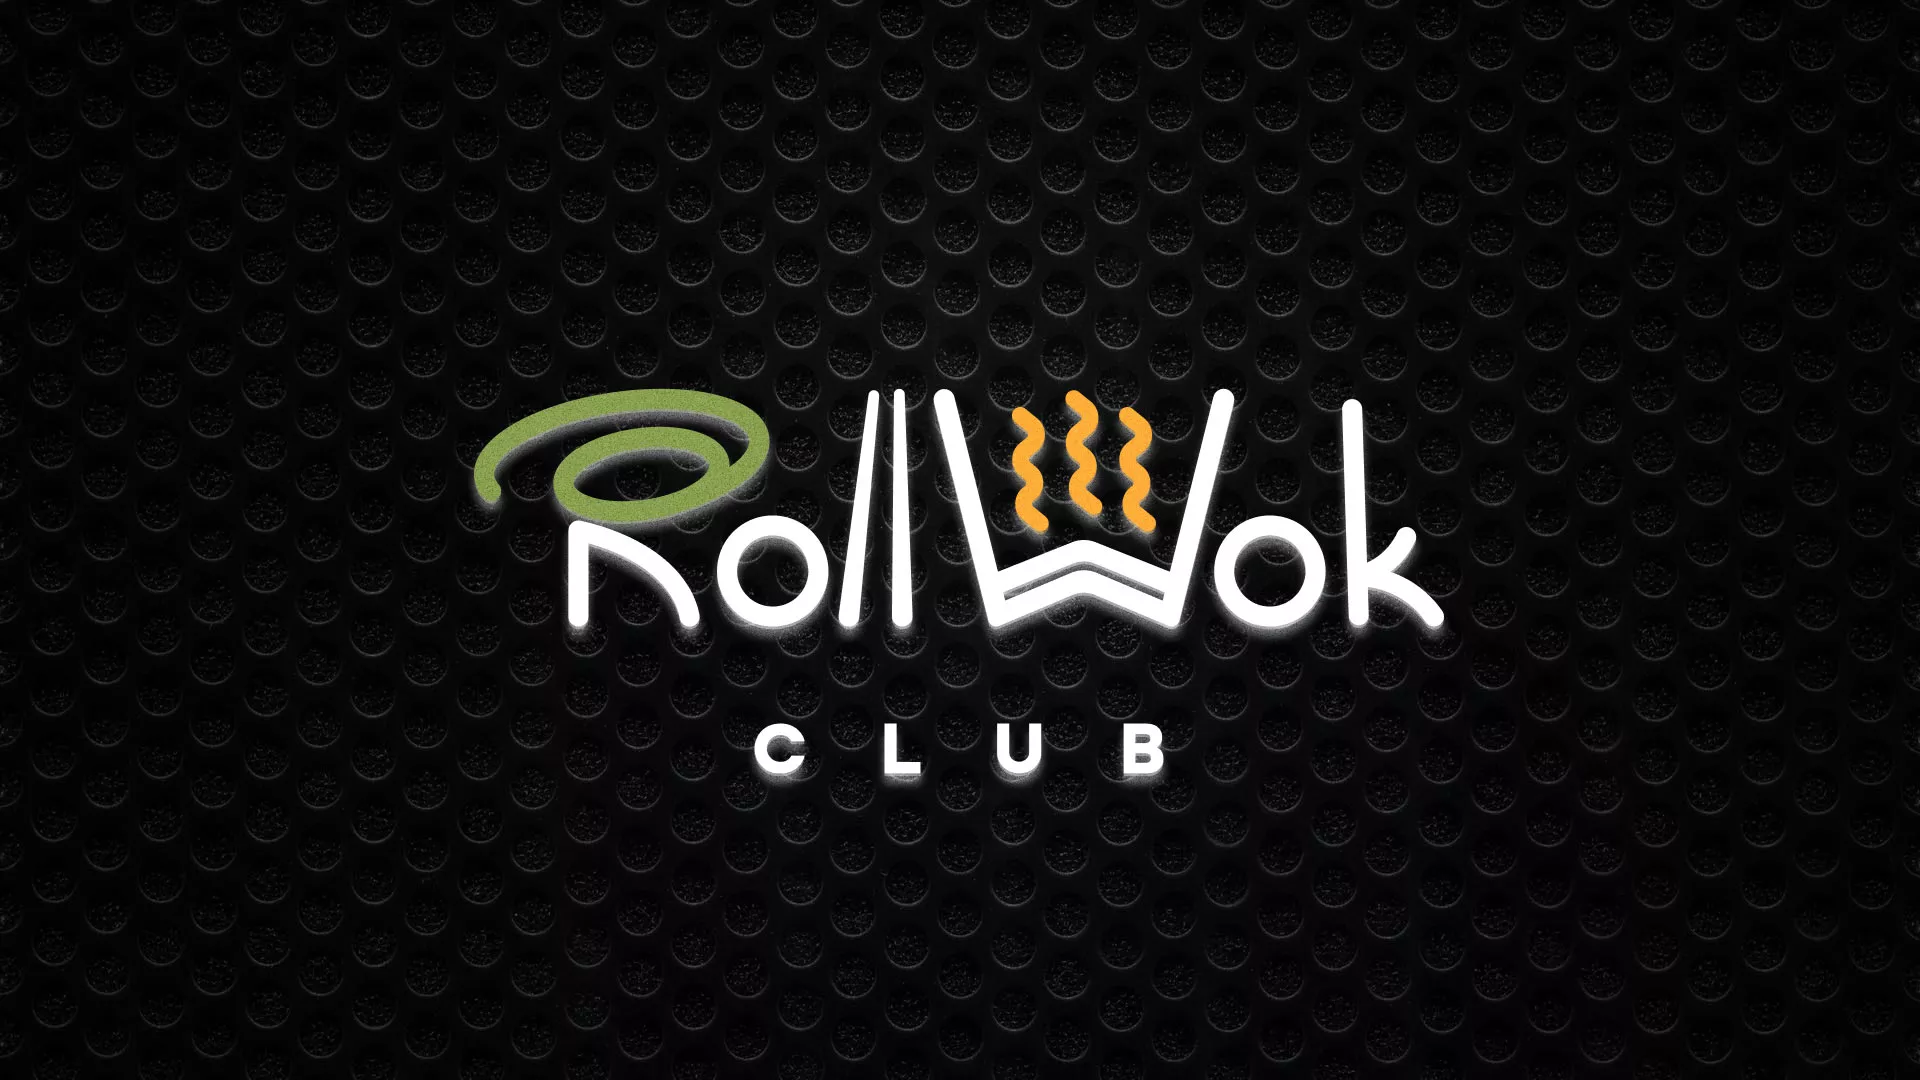 Брендирование торговых точек суши-бара «Roll Wok Club» в Суоярви